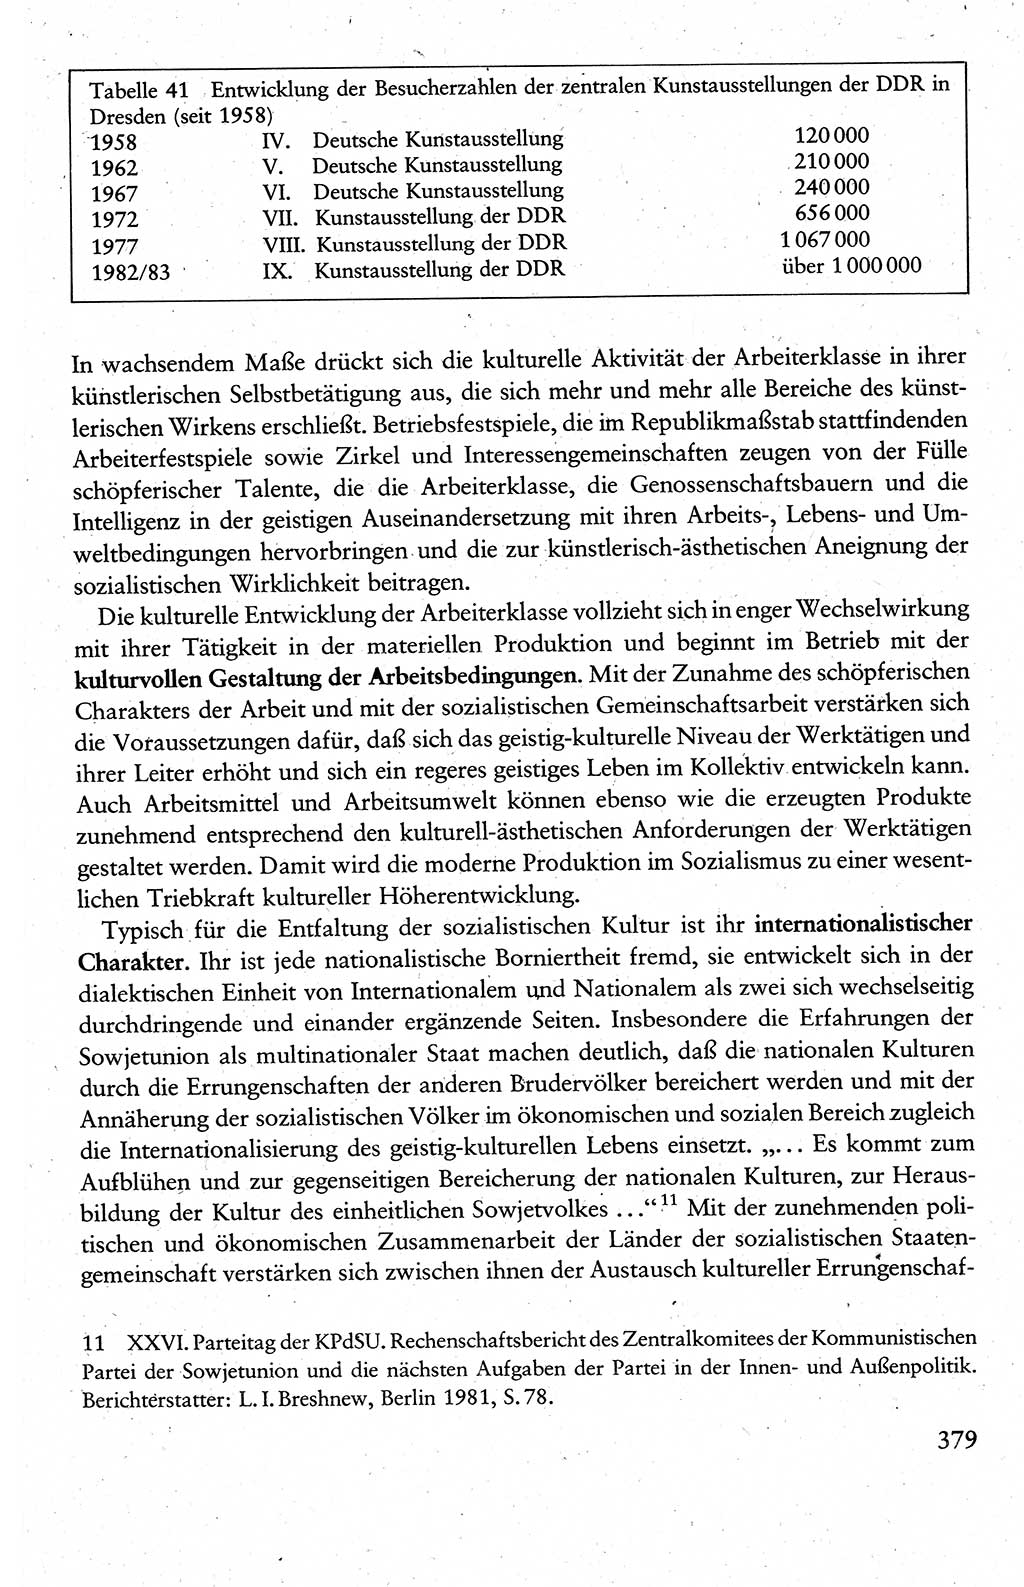 Wissenschaftlicher Kommunismus [Deutsche Demokratische Republik (DDR)], Lehrbuch für das marxistisch-leninistische Grundlagenstudium 1983, Seite 379 (Wiss. Komm. DDR Lb. 1983, S. 379)